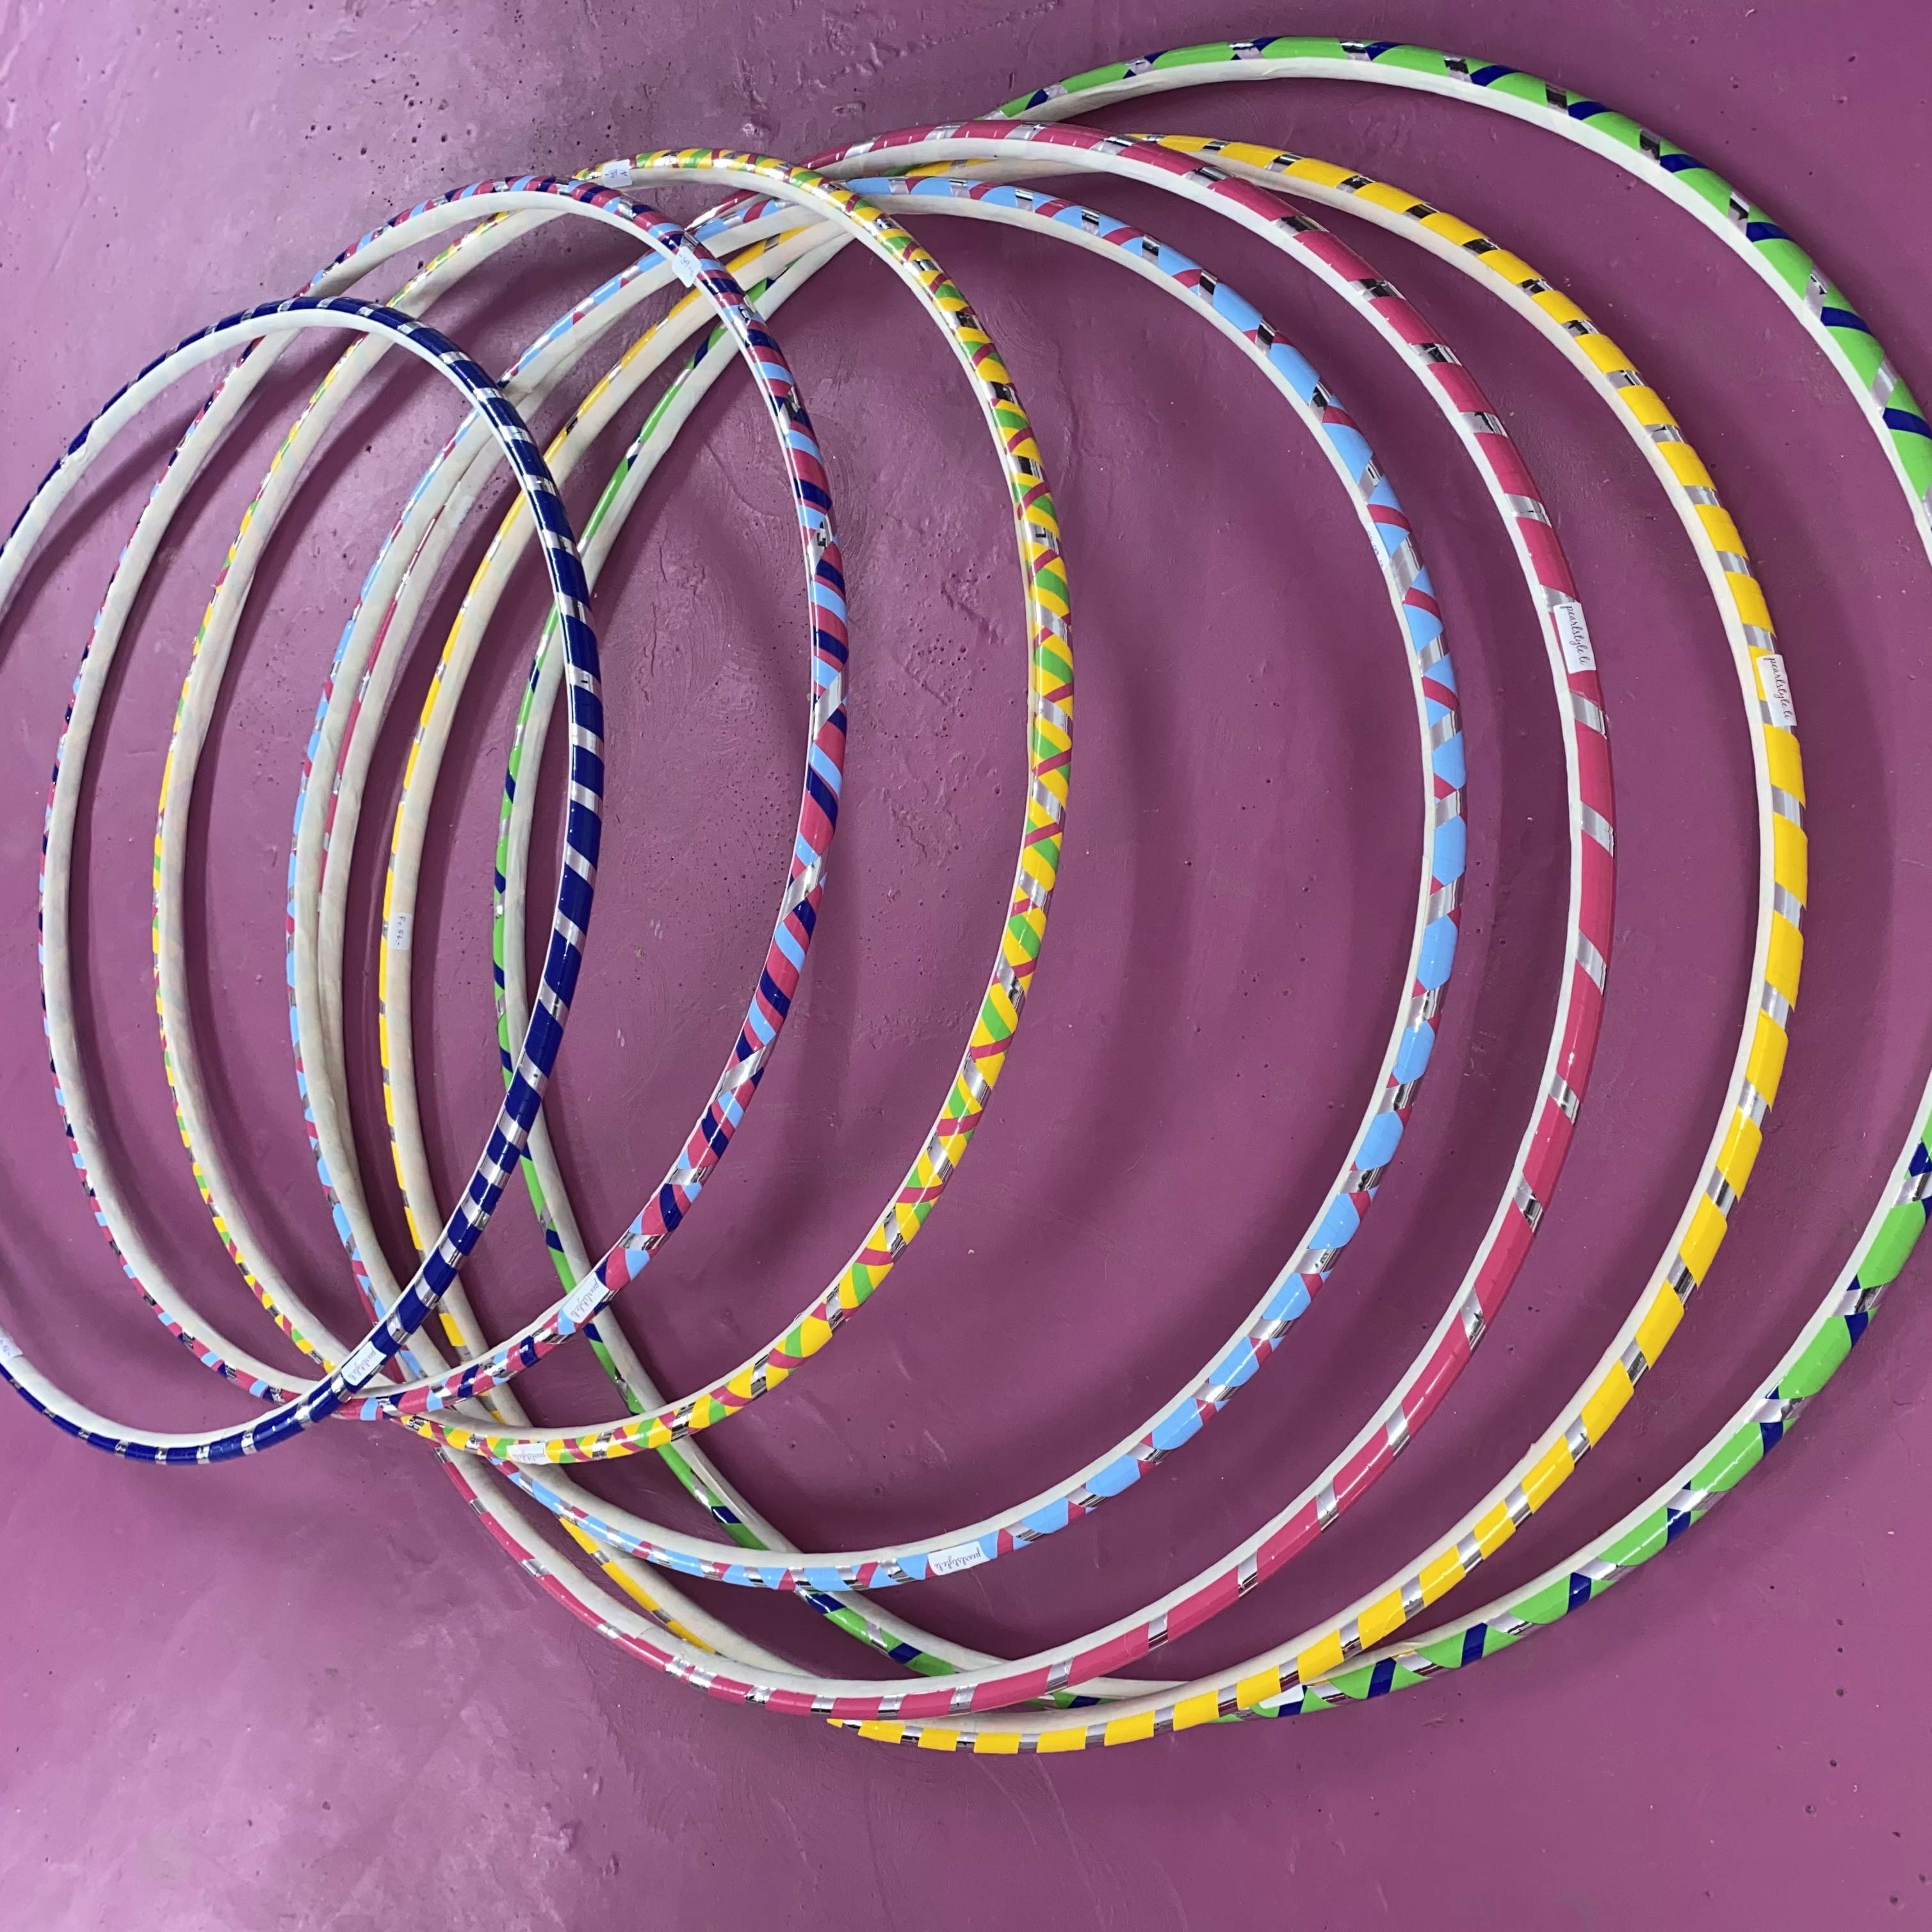 Profi Hula Hoop Ring 85 cm hellblau pink silber